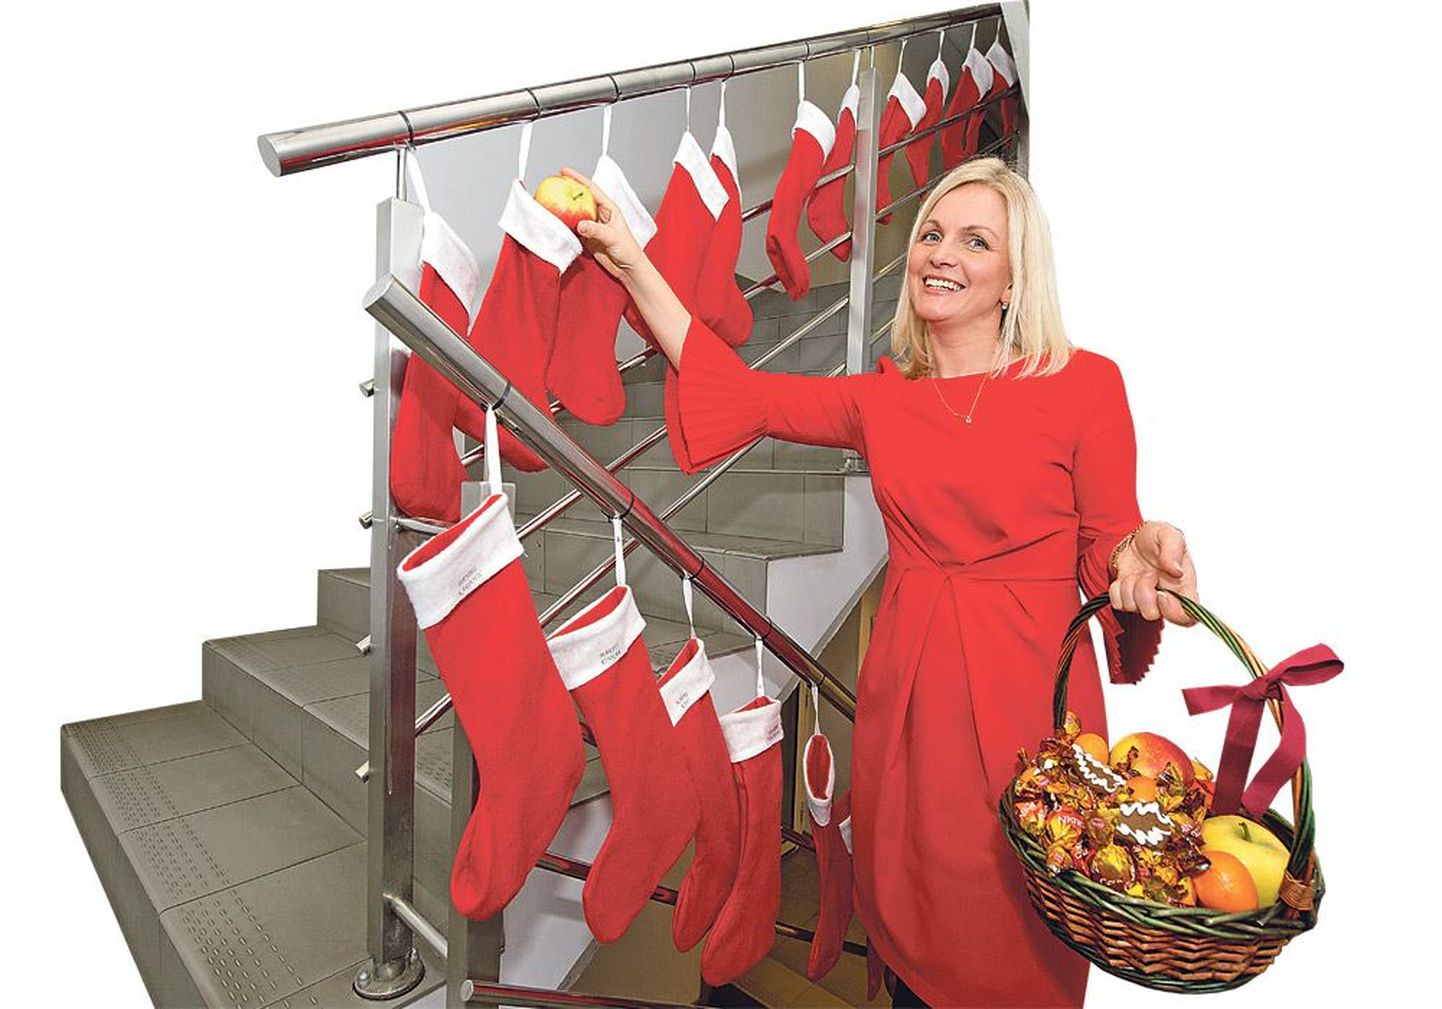 Директор по персоналу Tele2 Хелена Эверт говорит, что в этом году предприятие решило каждому своему работнику приготовить к Рождеству именной носок, в который гномики, и не только они, незаметно кладут какой-нибудь приятный сюрприз.